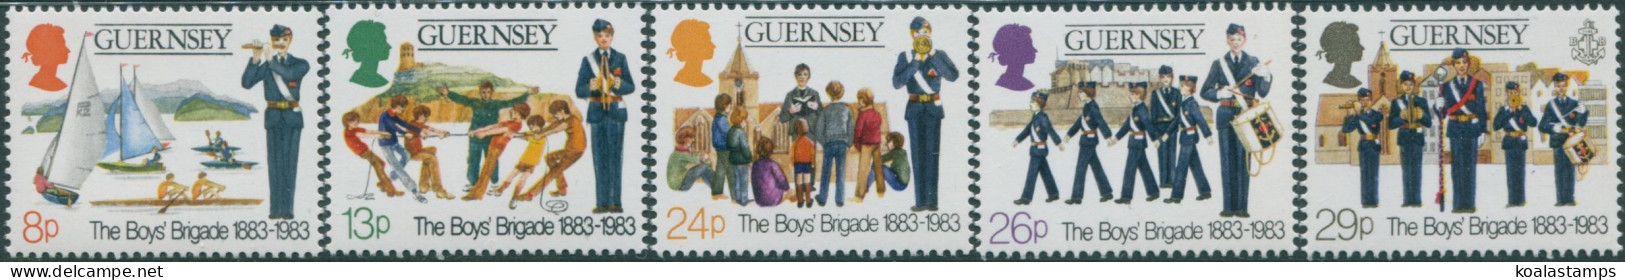 Guernsey 1982 SG268-272 Boys Brigade Set MNH - Guernsey